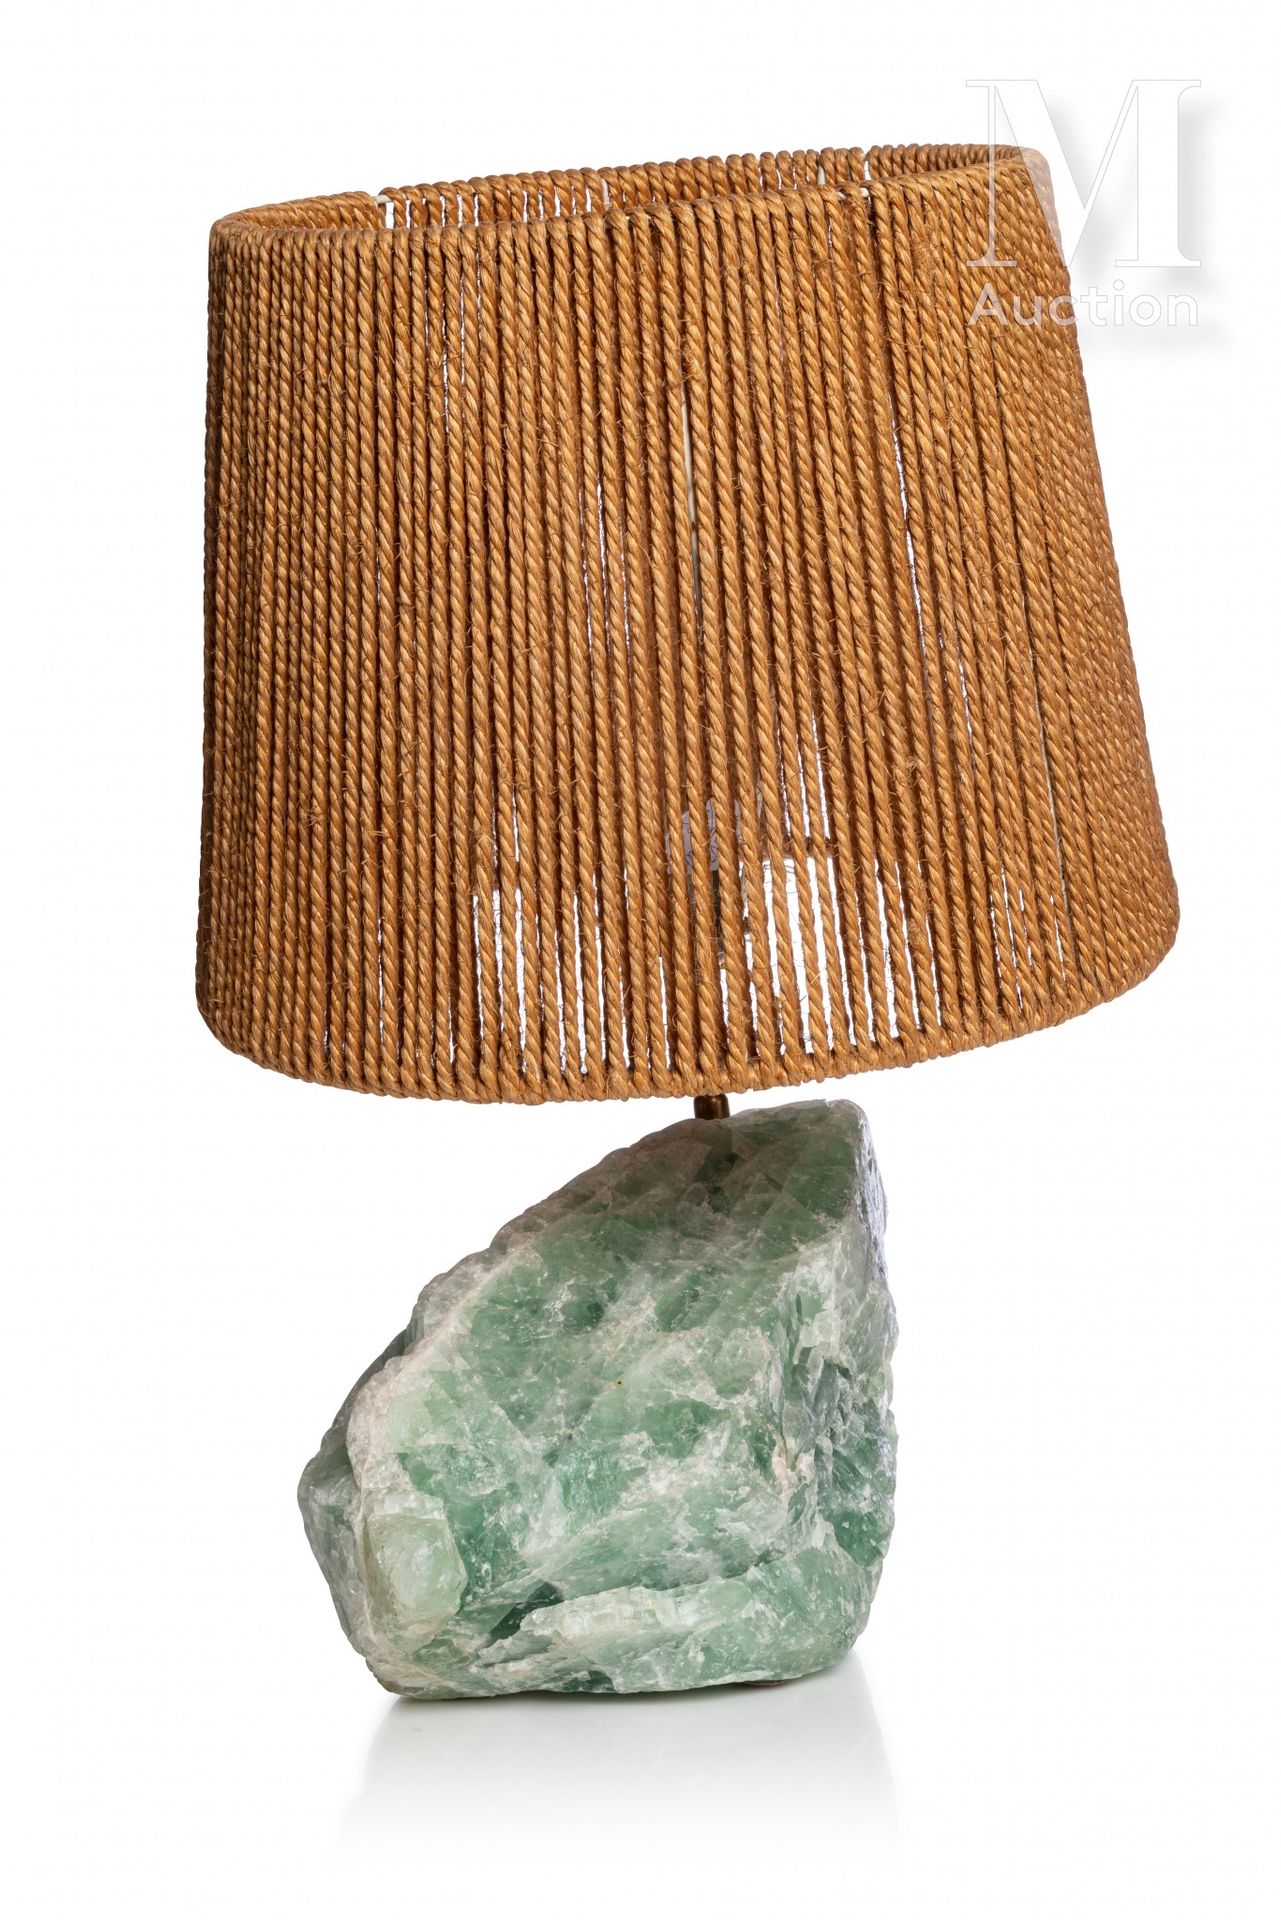 TRAVAIL FRANÇAIS Französische Arbeit

Tischlampe, die aus einem Block aus grünem&hellip;